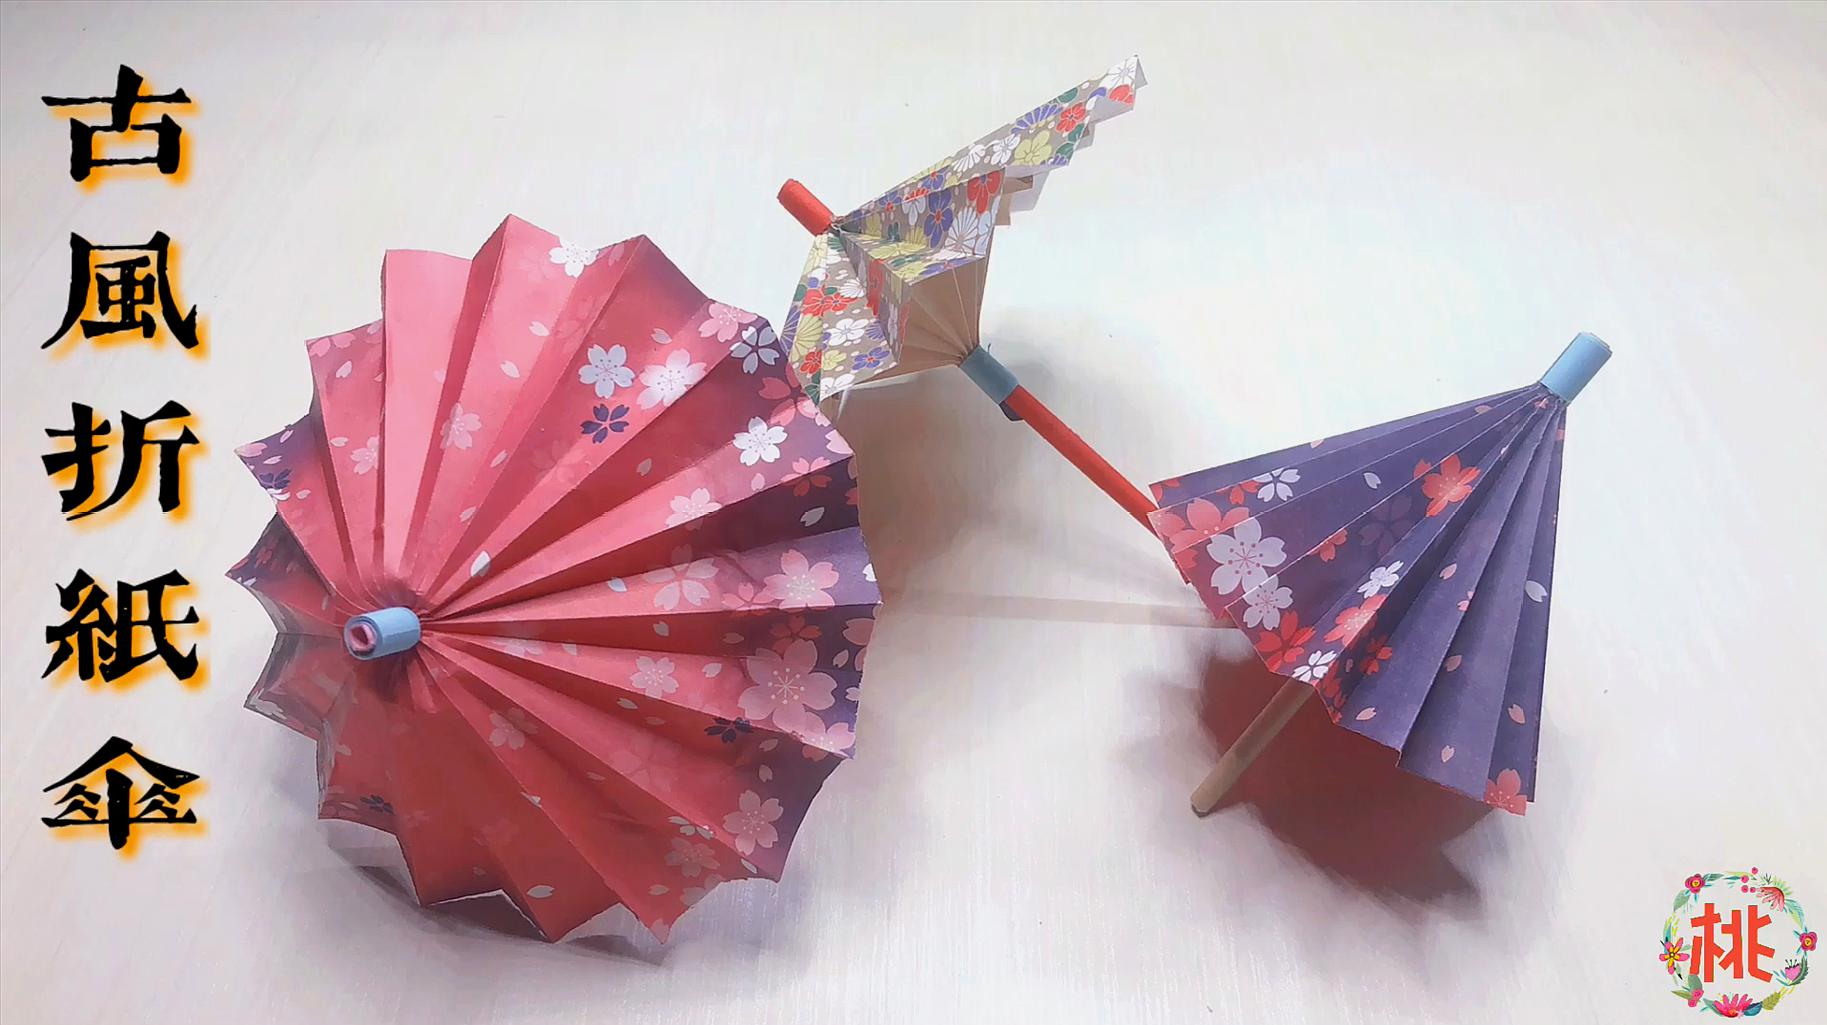 折纸教程:几分钟折一把浓厚古风的纸伞,简单易学,还可以收缩